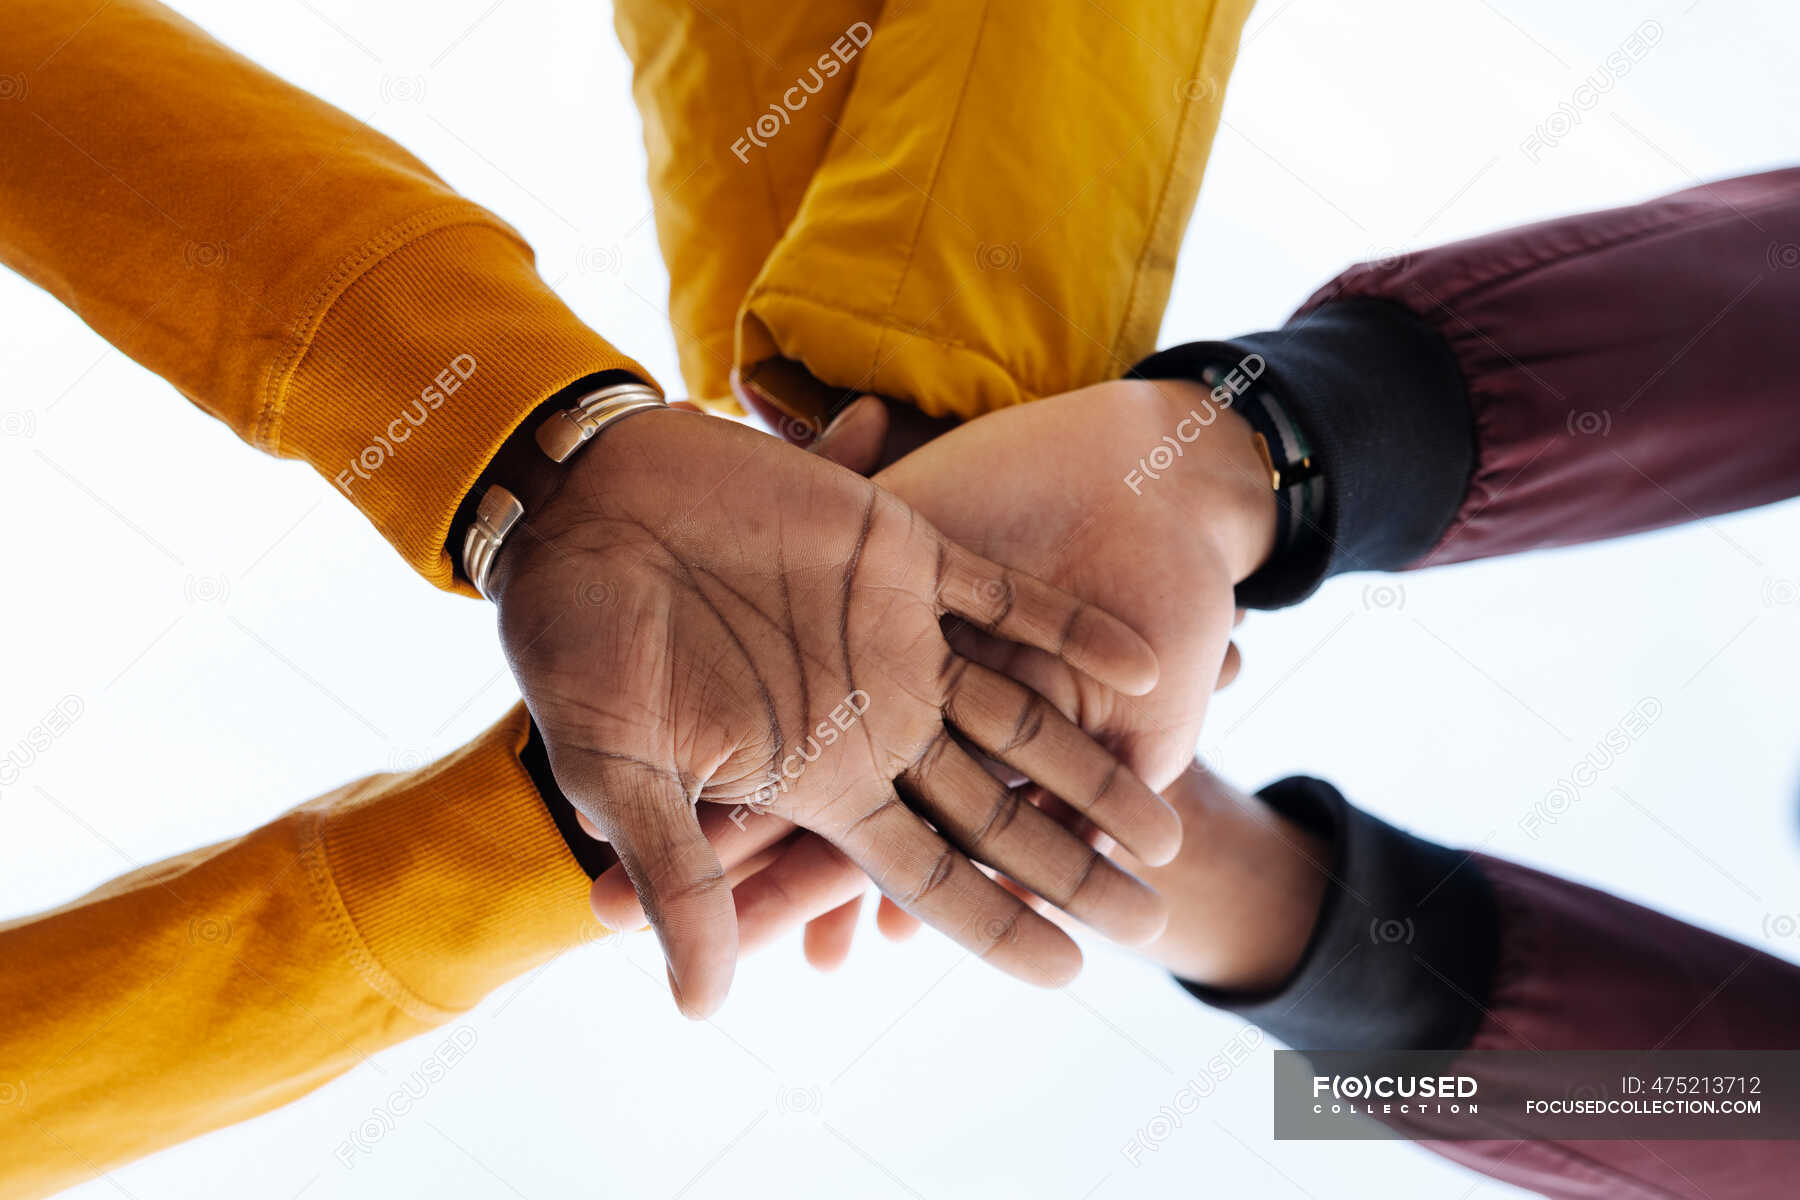 Рукопожатие друзей. Руки складывают друг на друга. Фото жмут руки друг другу хоккеисты. Десять друзей пожали друг другу руки сколько